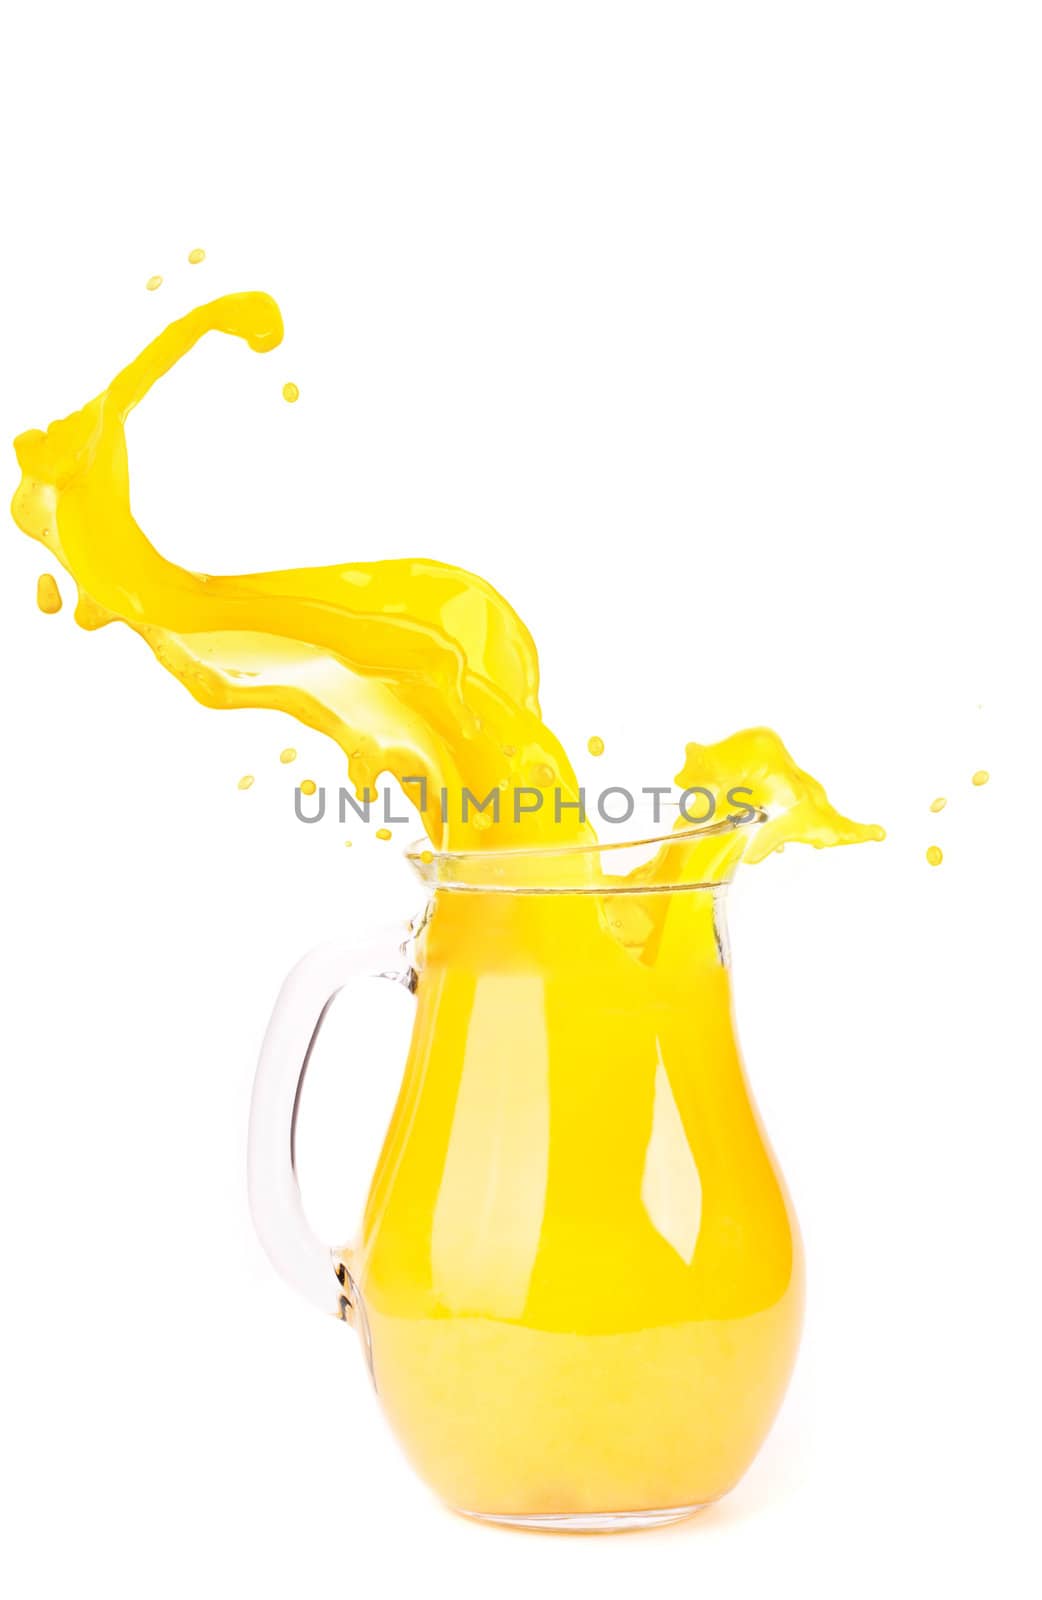 orange juice splash isolated on white by ozaiachin